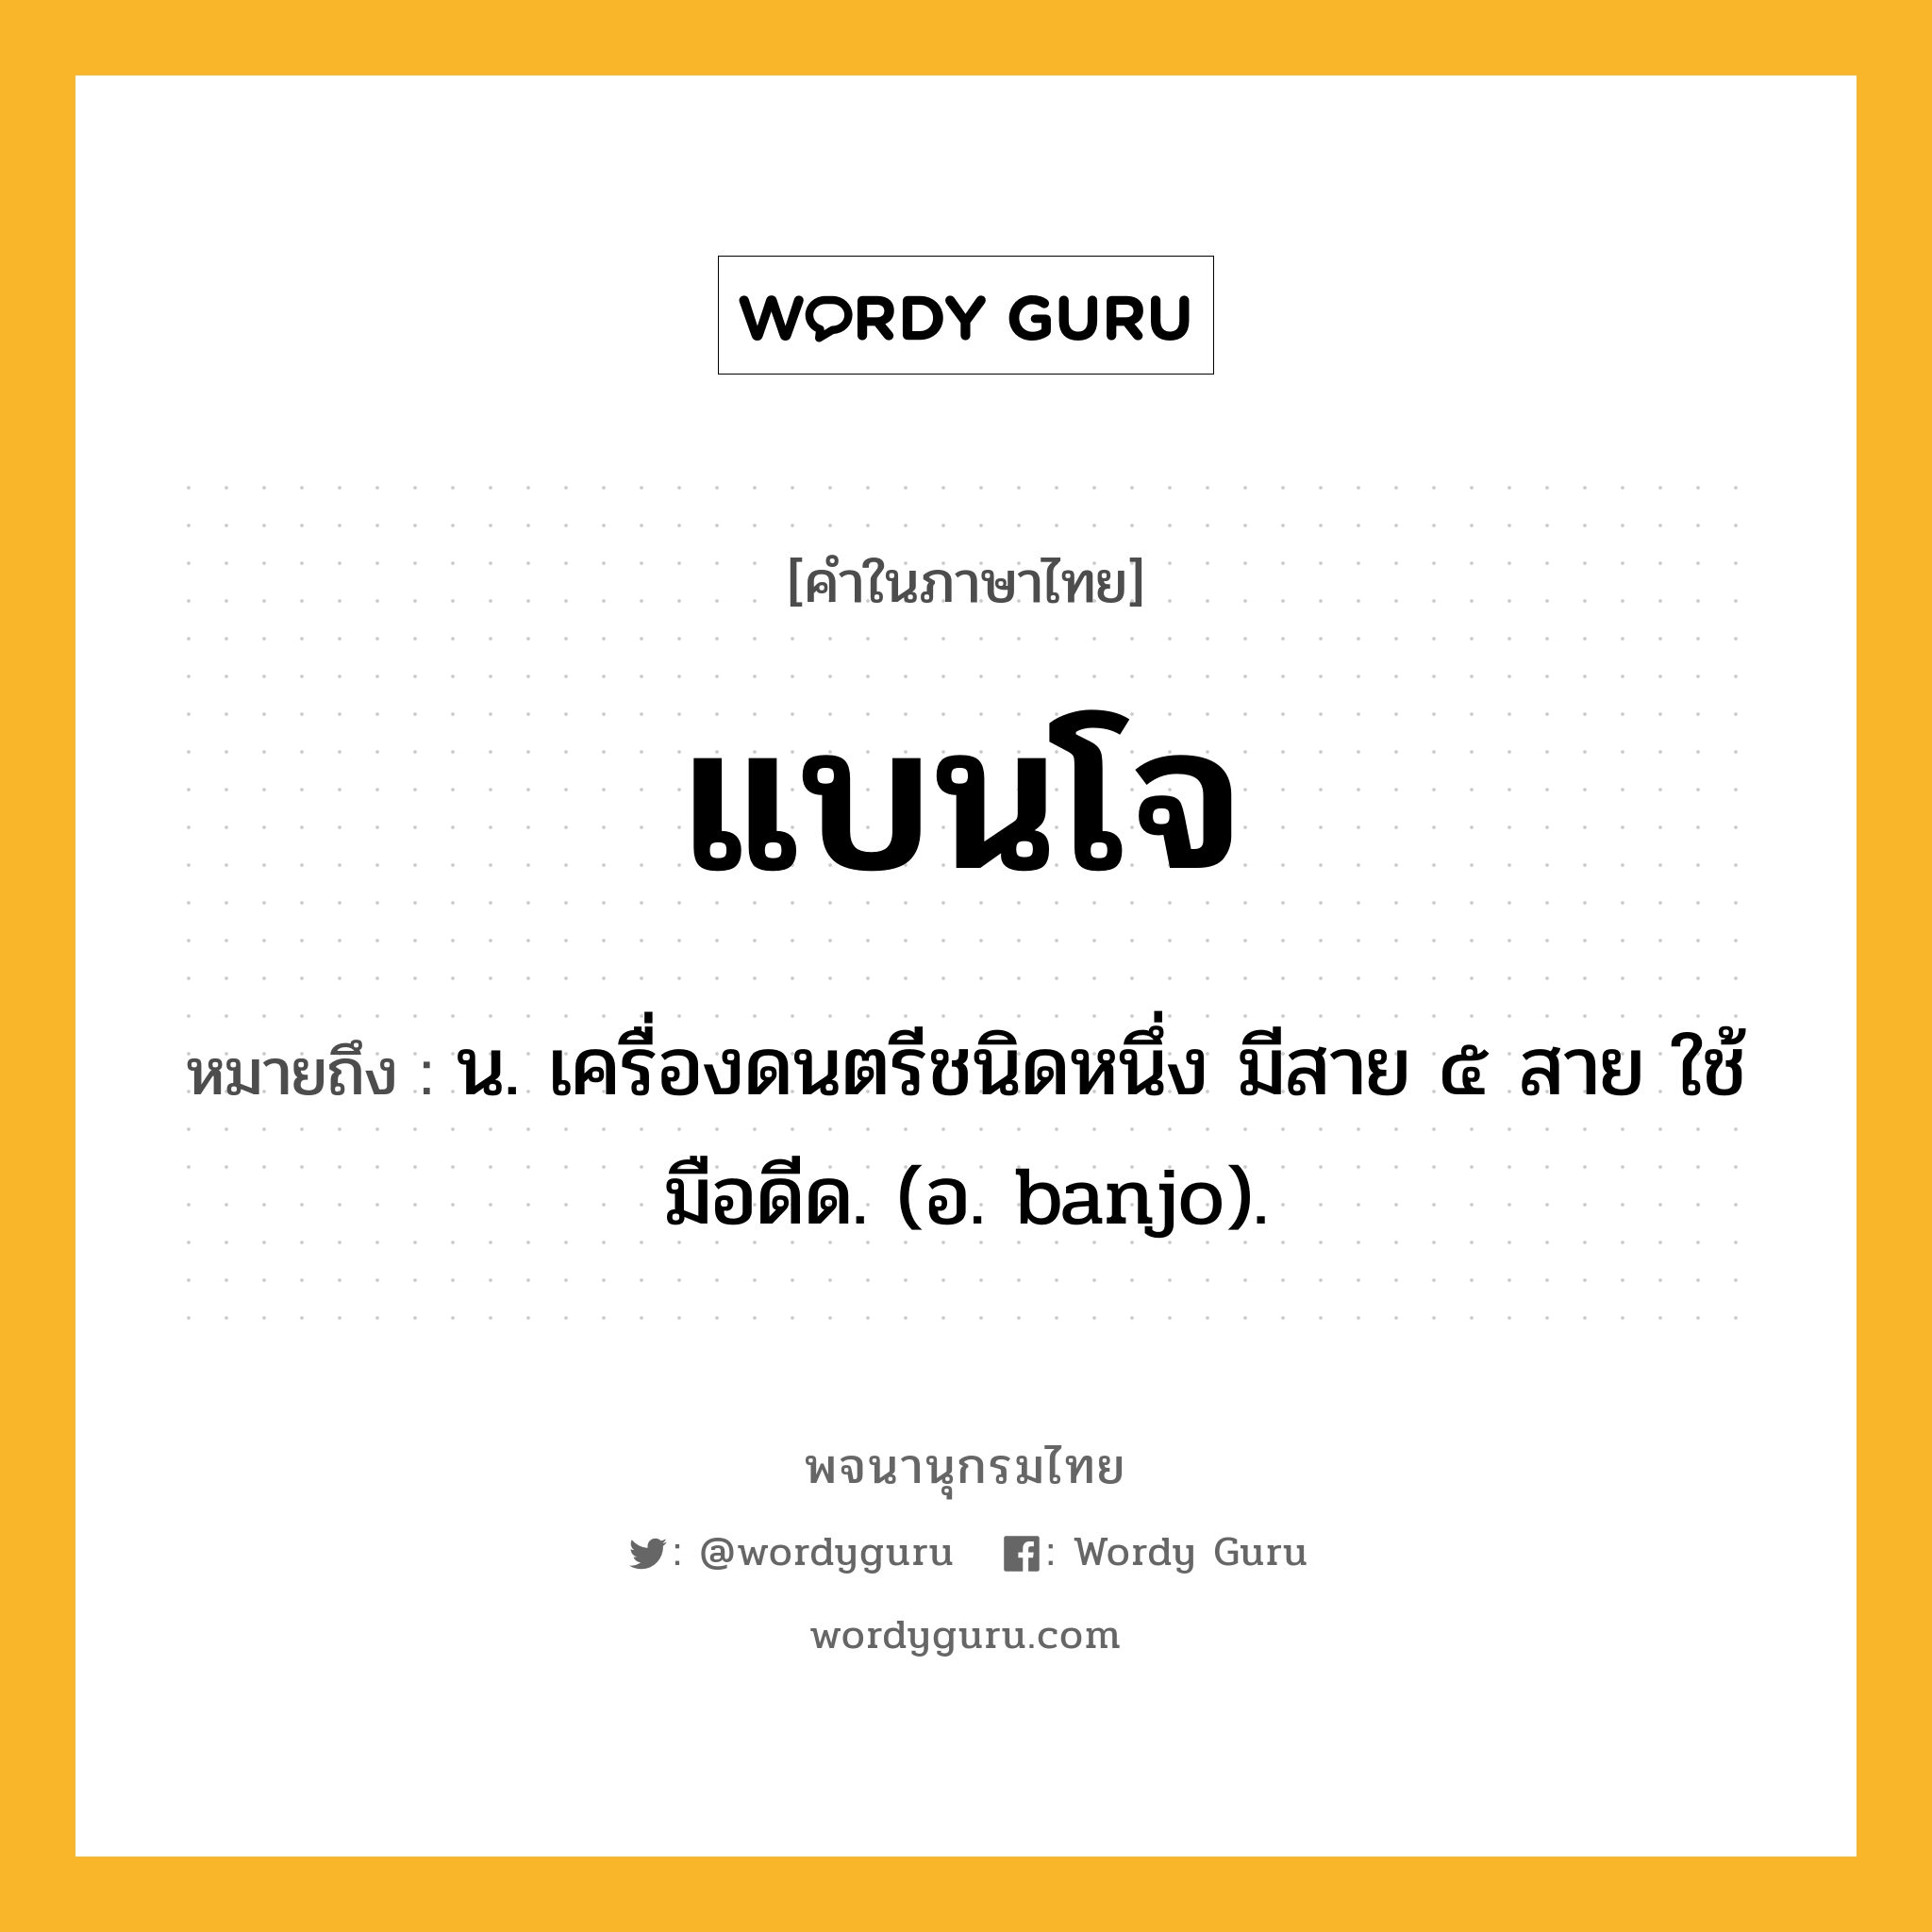 แบนโจ หมายถึงอะไร?, คำในภาษาไทย แบนโจ หมายถึง น. เครื่องดนตรีชนิดหนึ่ง มีสาย ๕ สาย ใช้มือดีด. (อ. banjo).